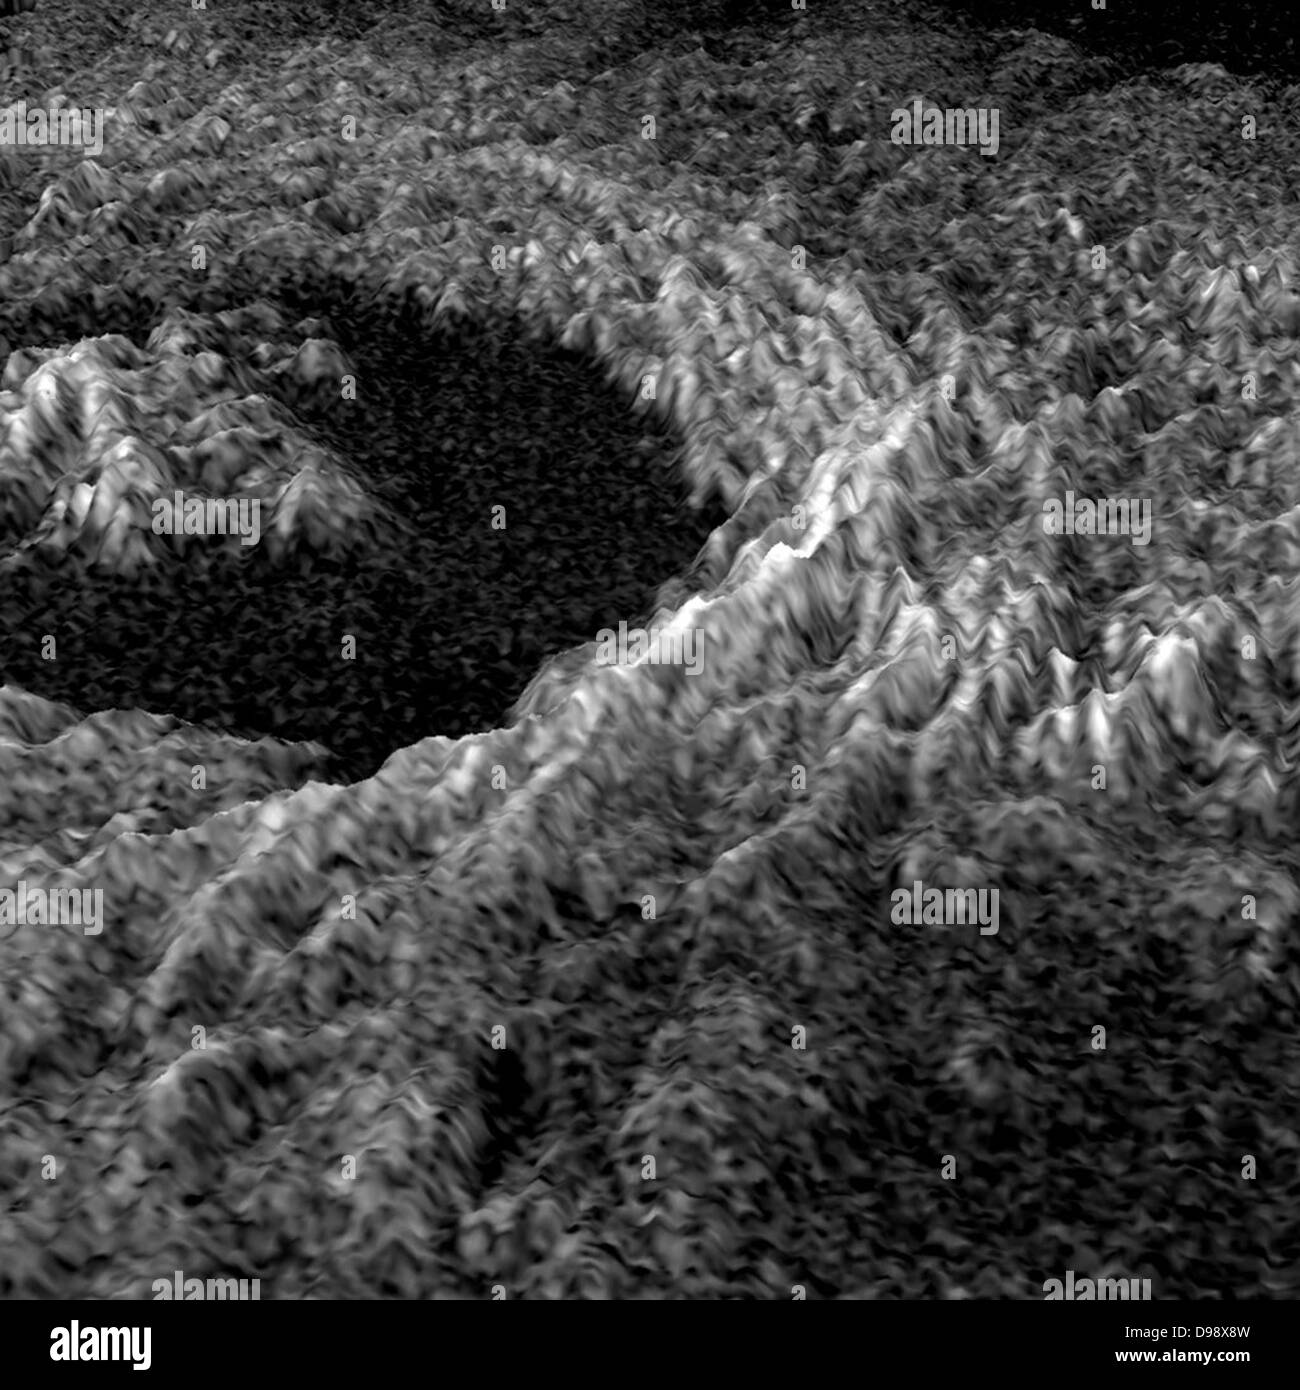 Planète Vénus. représentation tridimensionnelle de variations de luminosité dans une image radar de Magellan cratère Golubkina améliore Banque D'Images